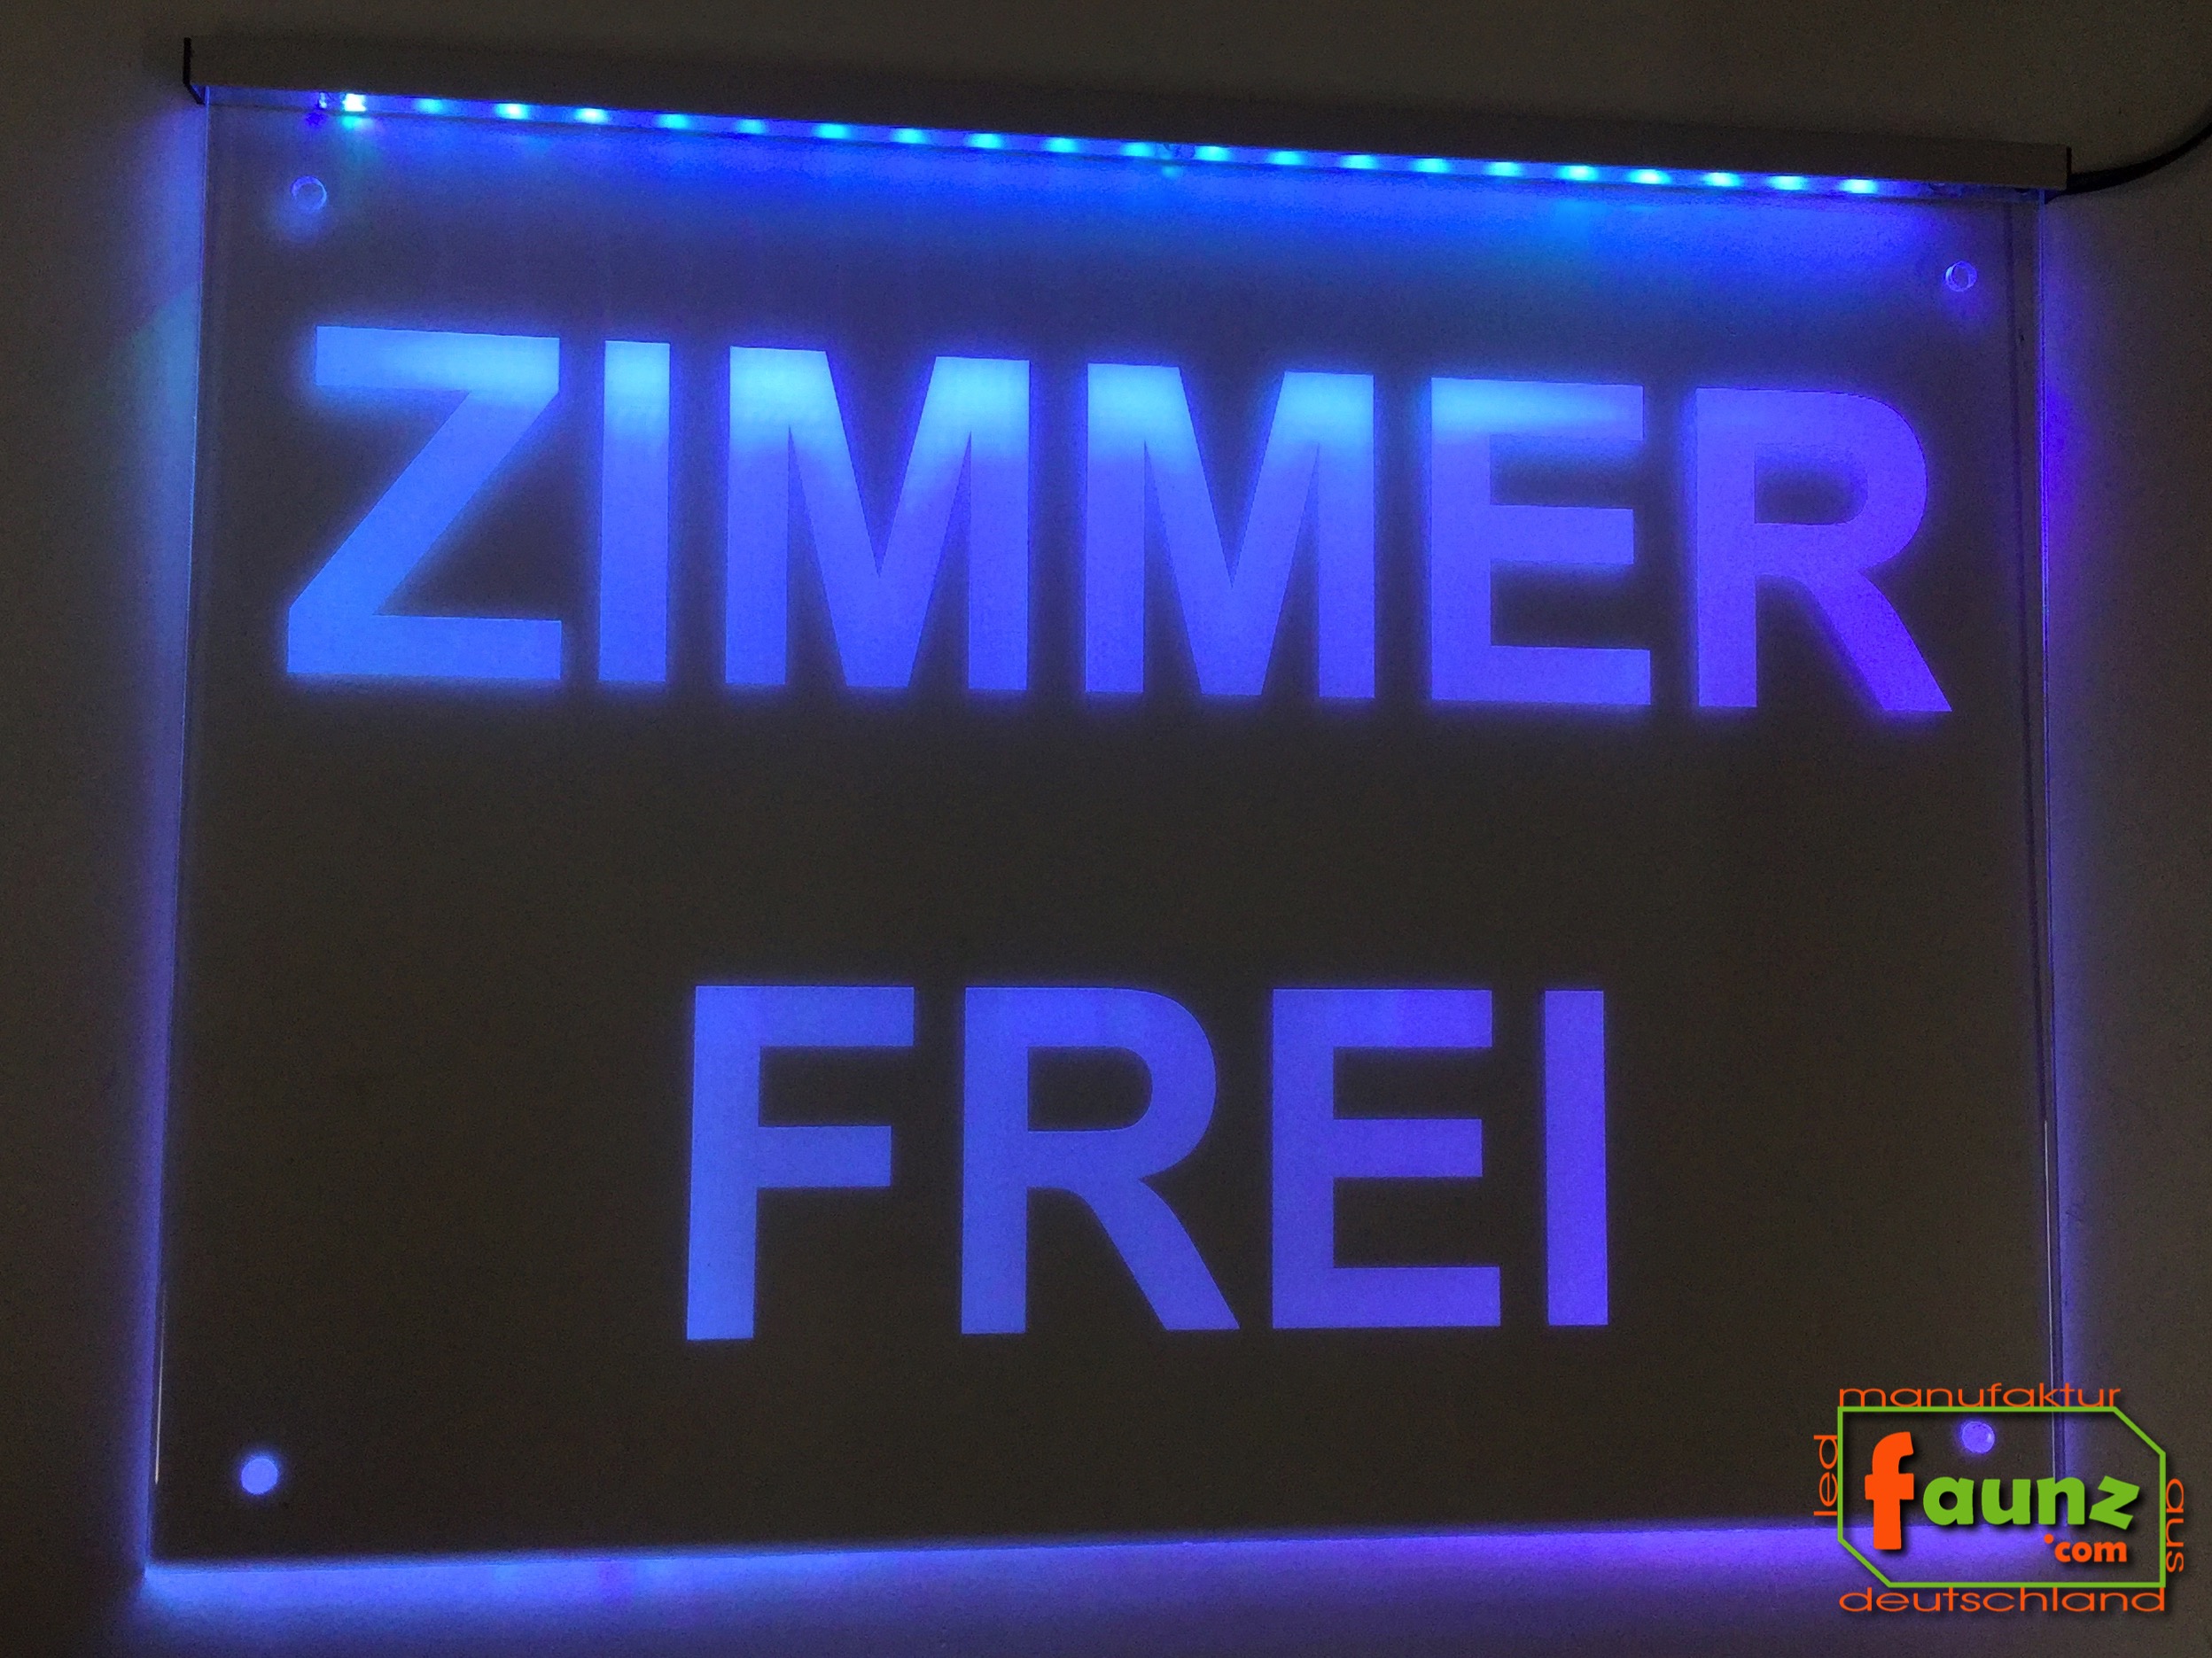 LED Werbeschild Hinweisschild ZIMMER FREI faunz©com faunz Leuchtschild